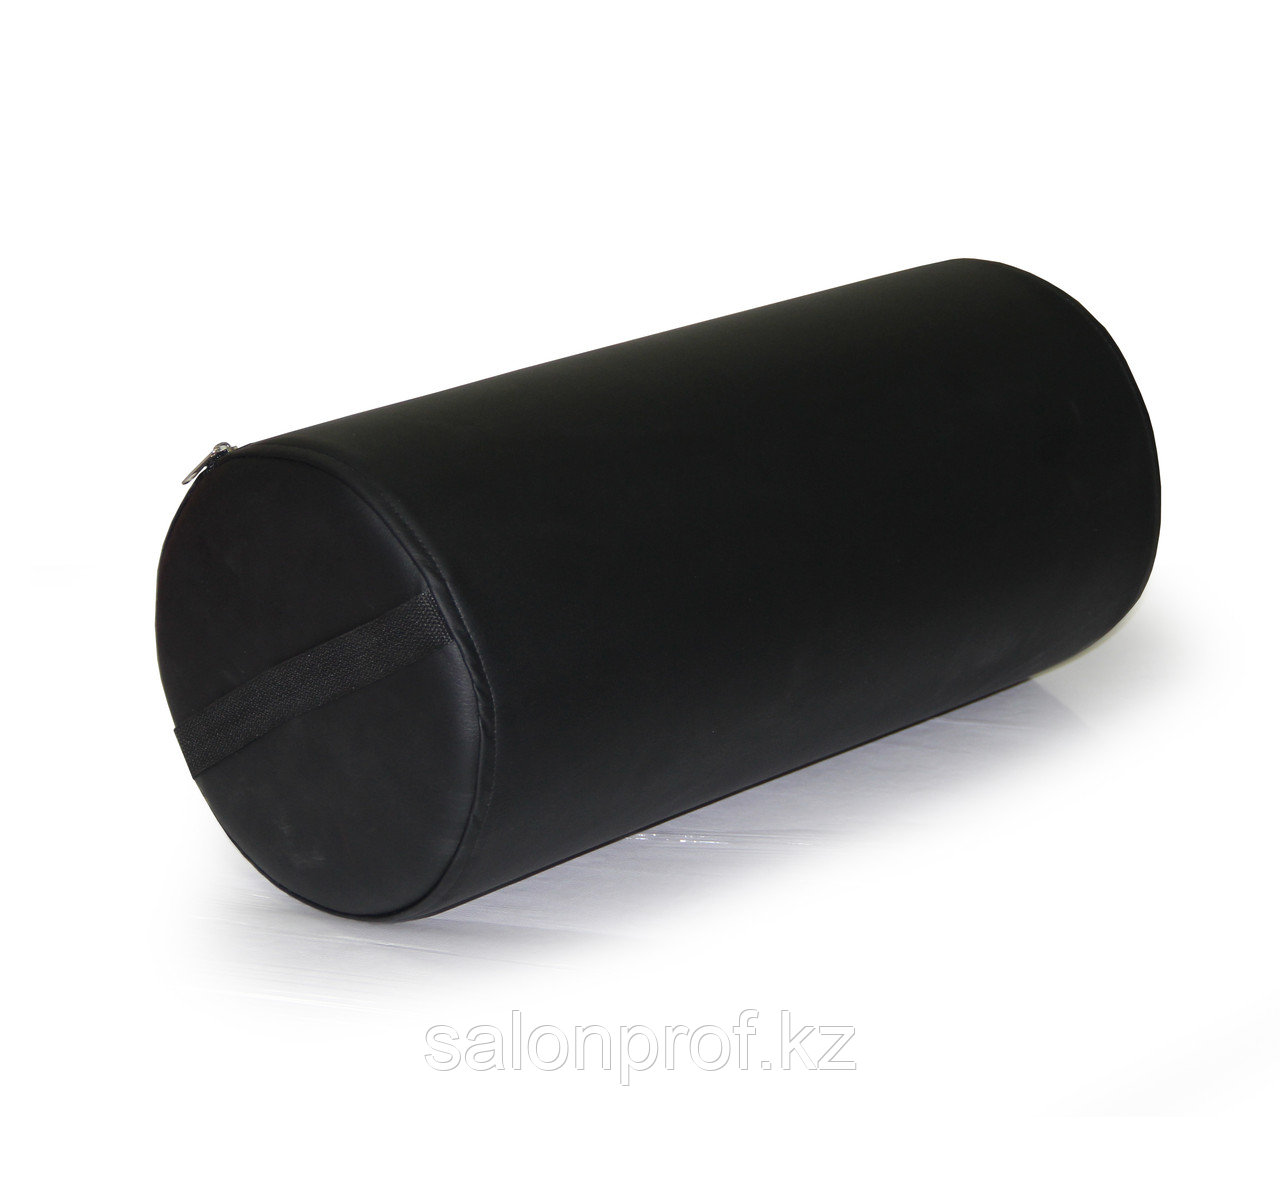 AS-0122 Валик для массажа круглый 50 х 22 см (черный) №75709